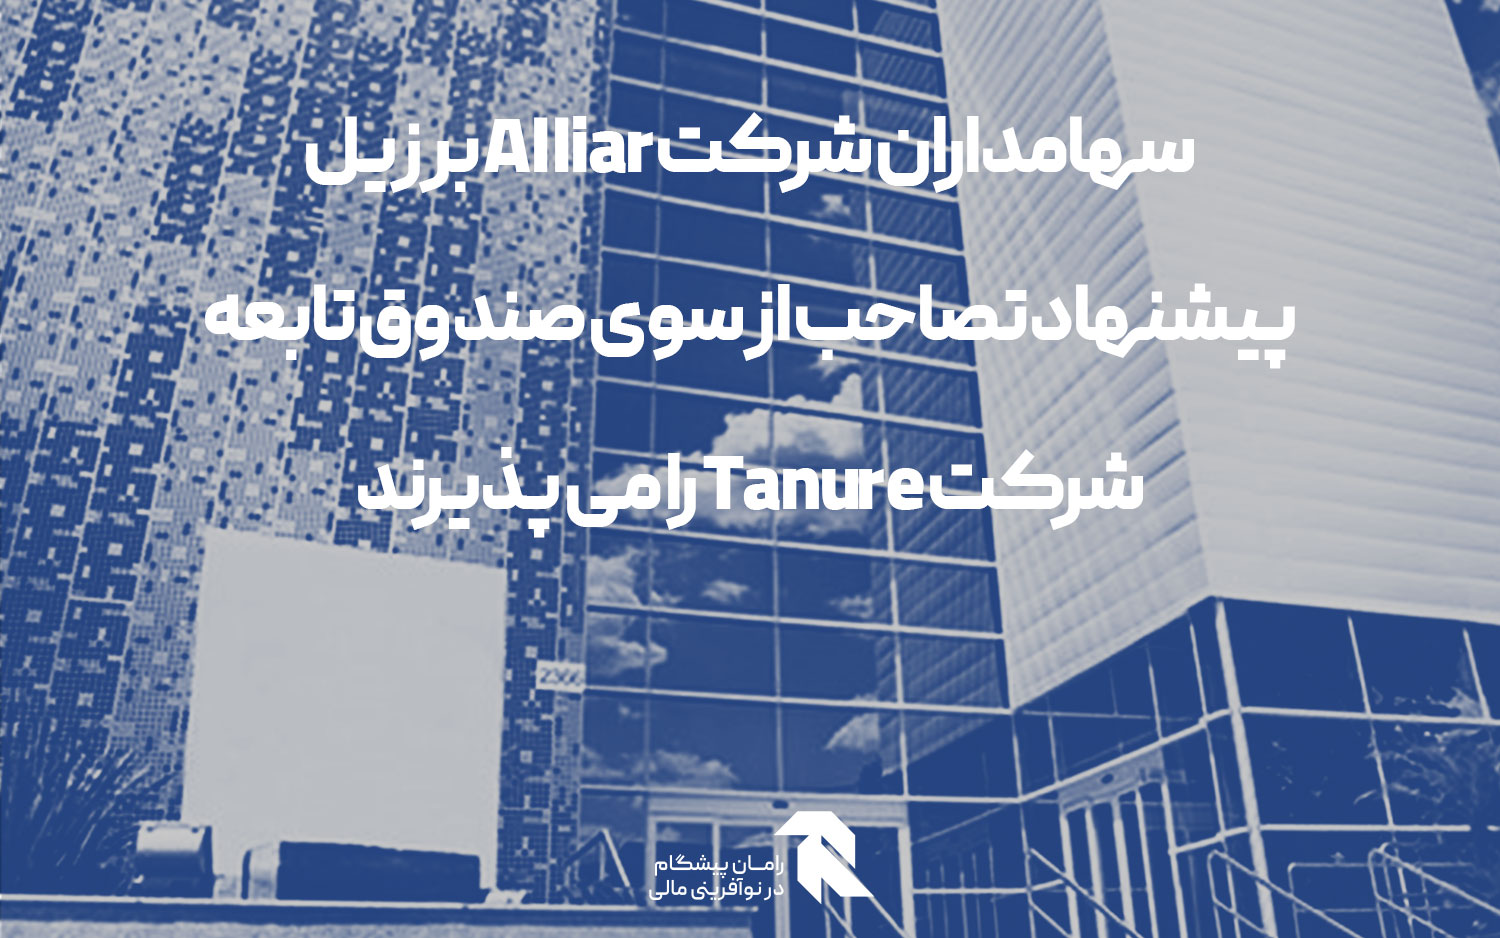 سهامداران شرکت Alliar برزیل پیشنهاد تصاحب از سوی صندوق تابعه شرکت Tanure را می پذیرند